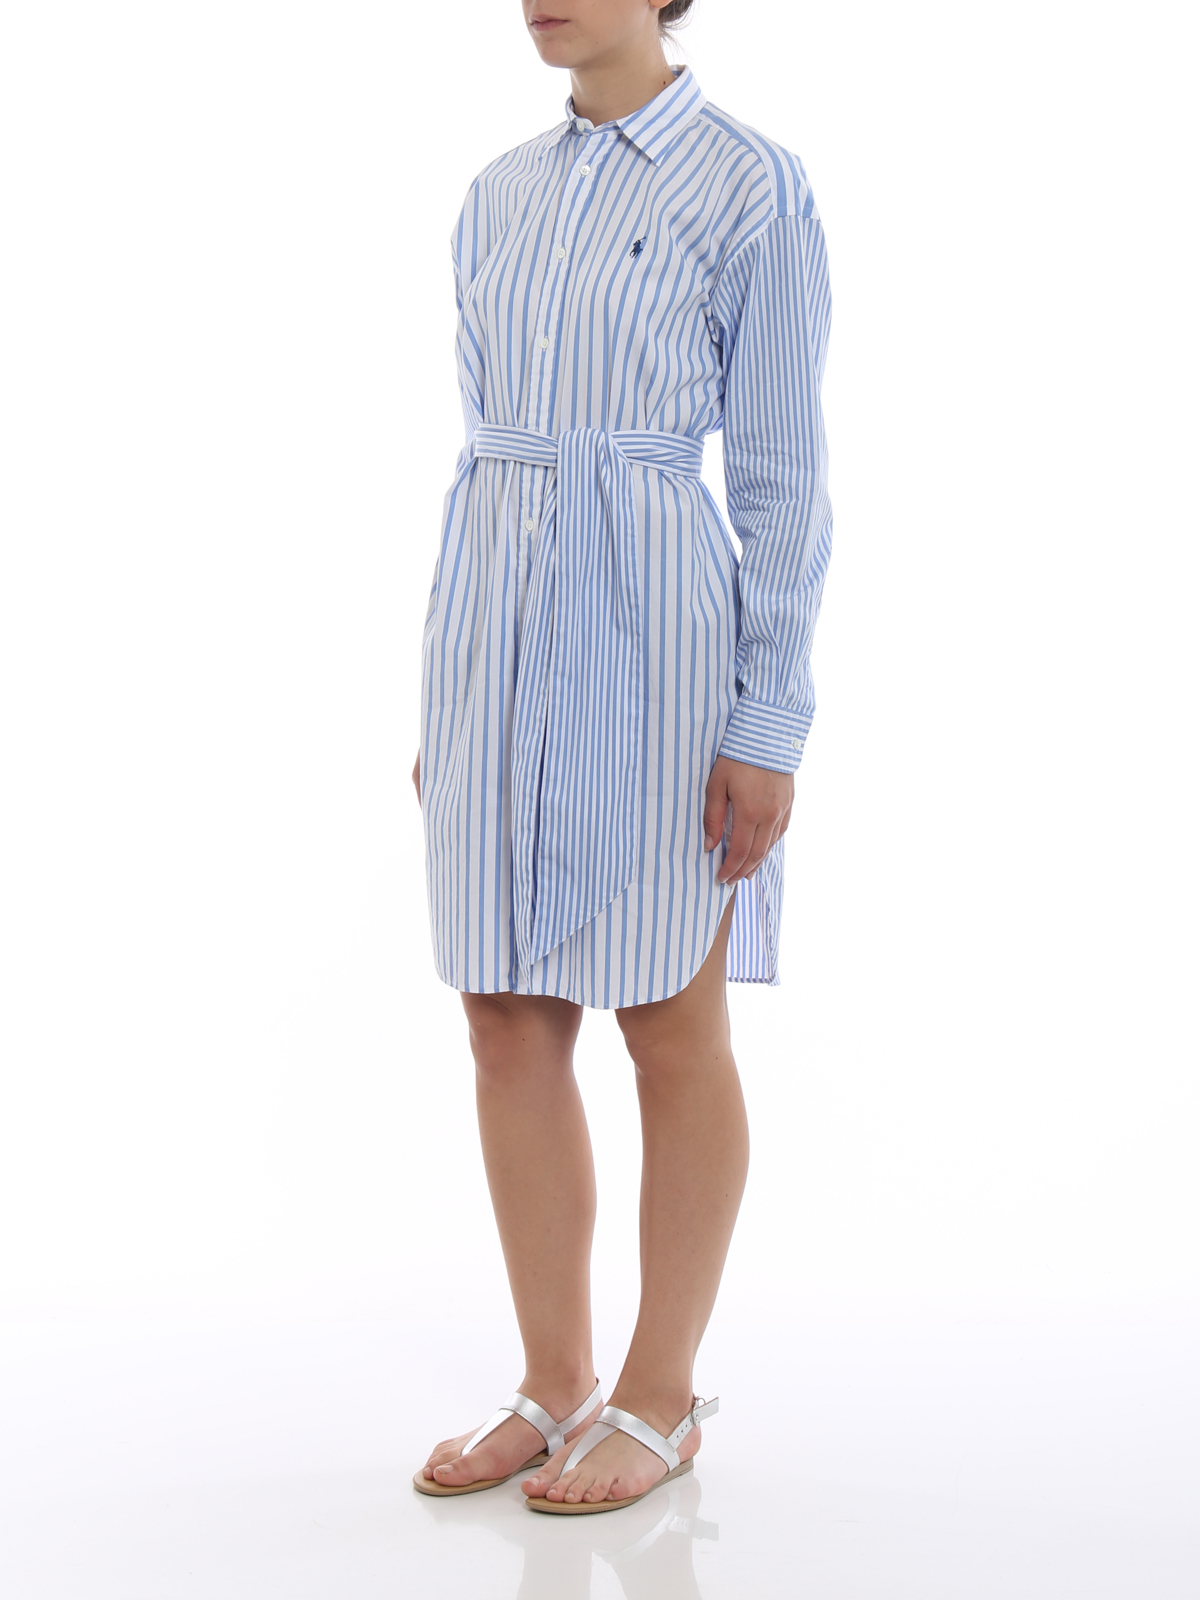 polo ralph lauren striped shirt dress